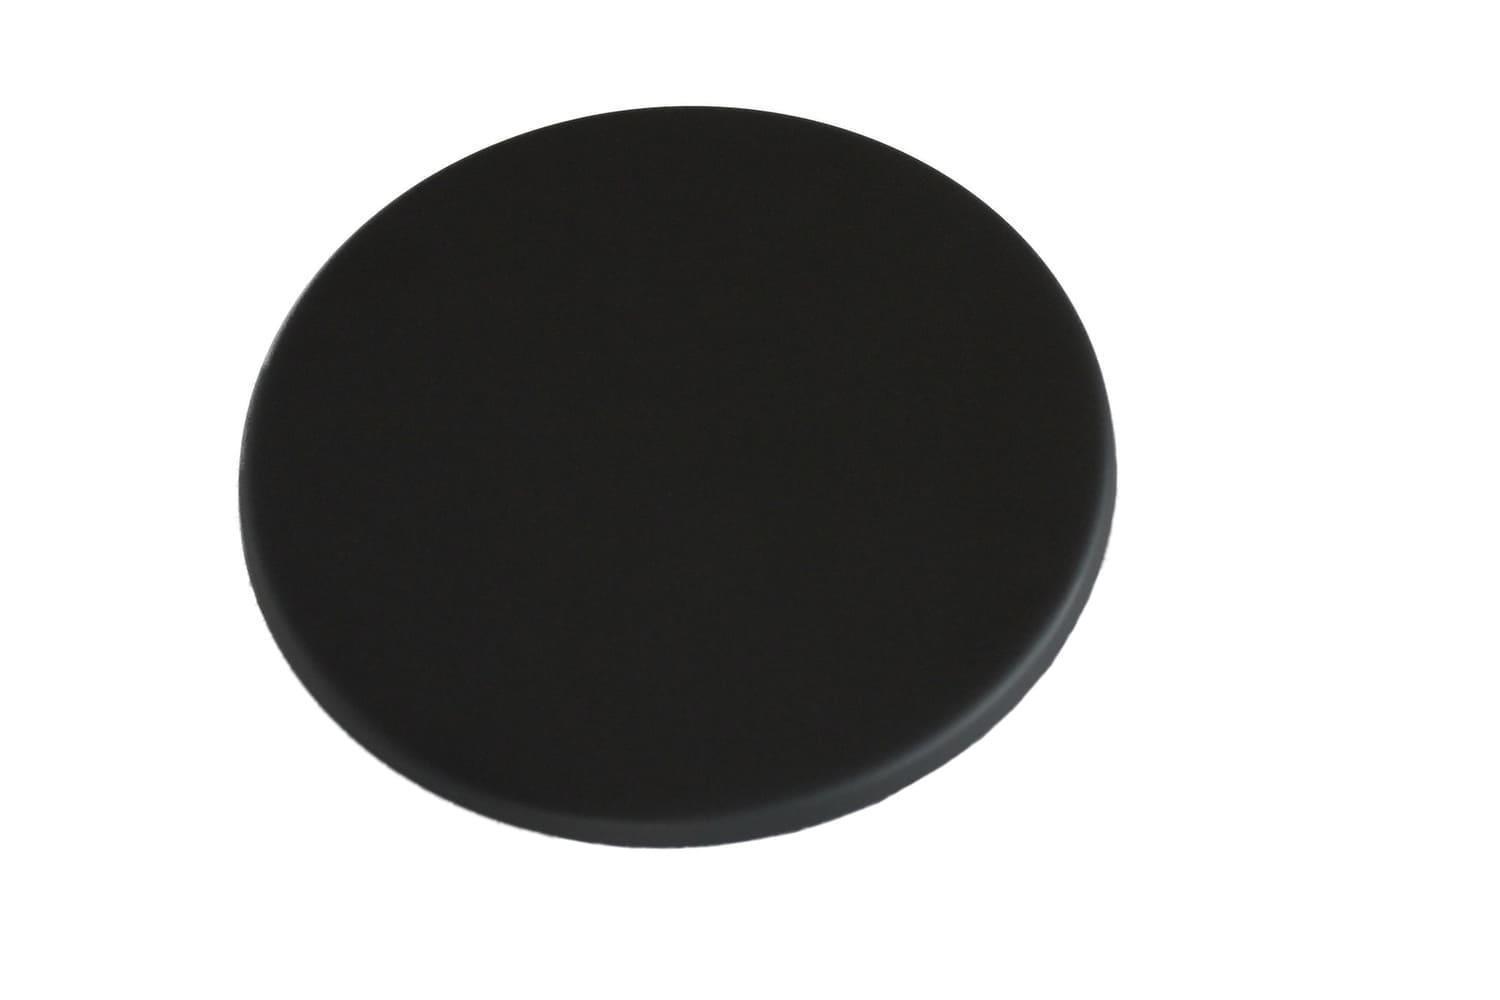 Rauchrohr / Ofenrohrabdeckung schwarz, Blindkappe, Ø 150 mm